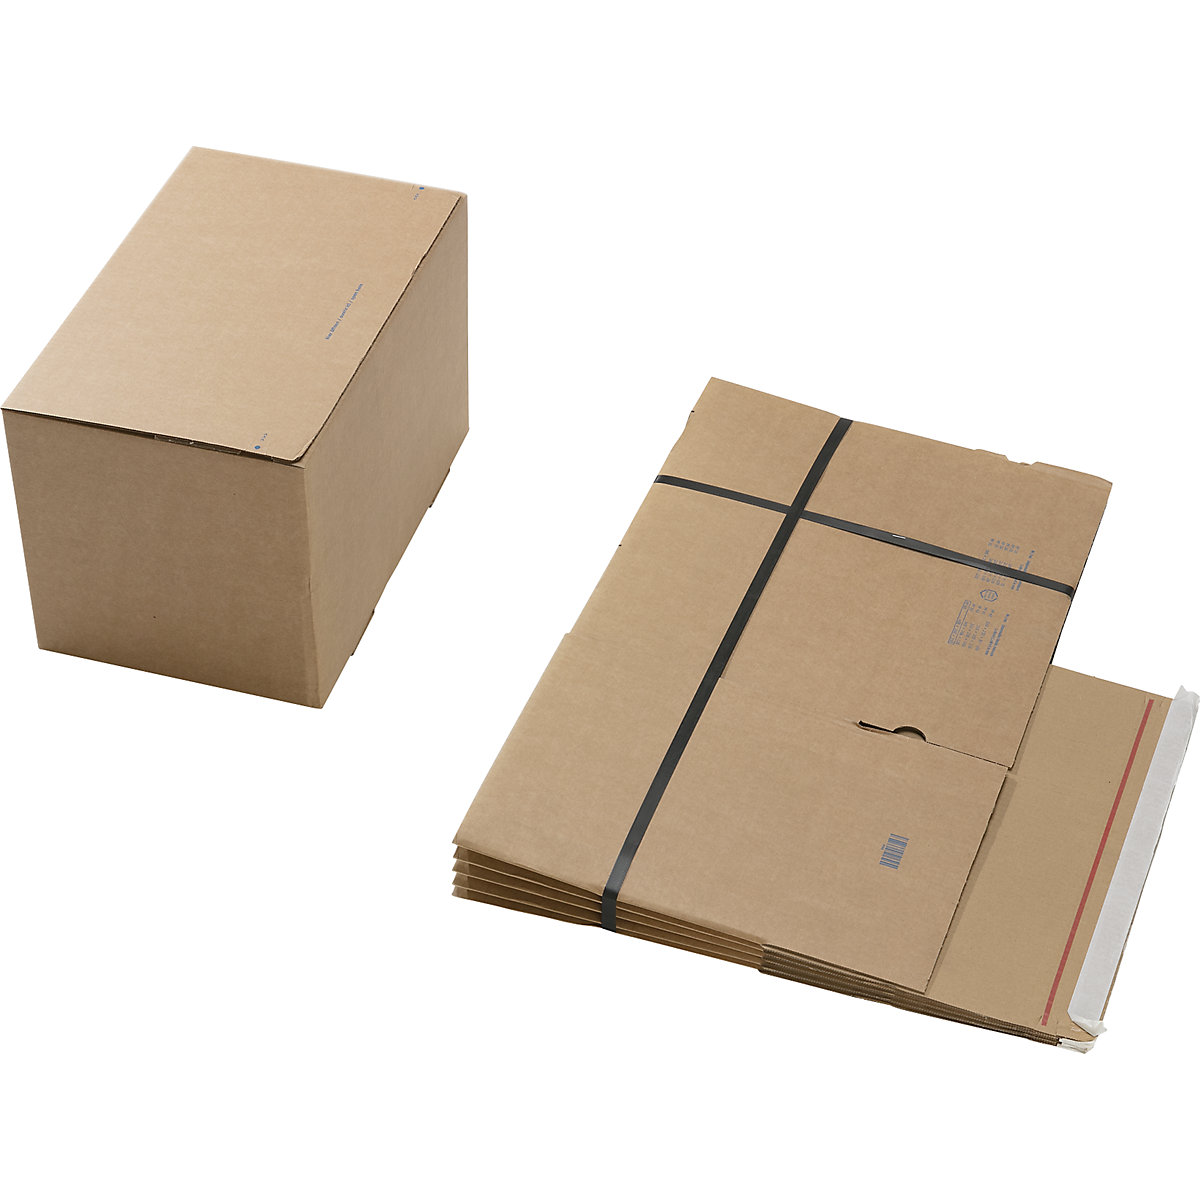 Caixa de cartão de envio, com fundo automático e fecho autocolante, dimensões interiores CxLxA 400 x 260 x 250 mm, embalagem de 60 unidades-5